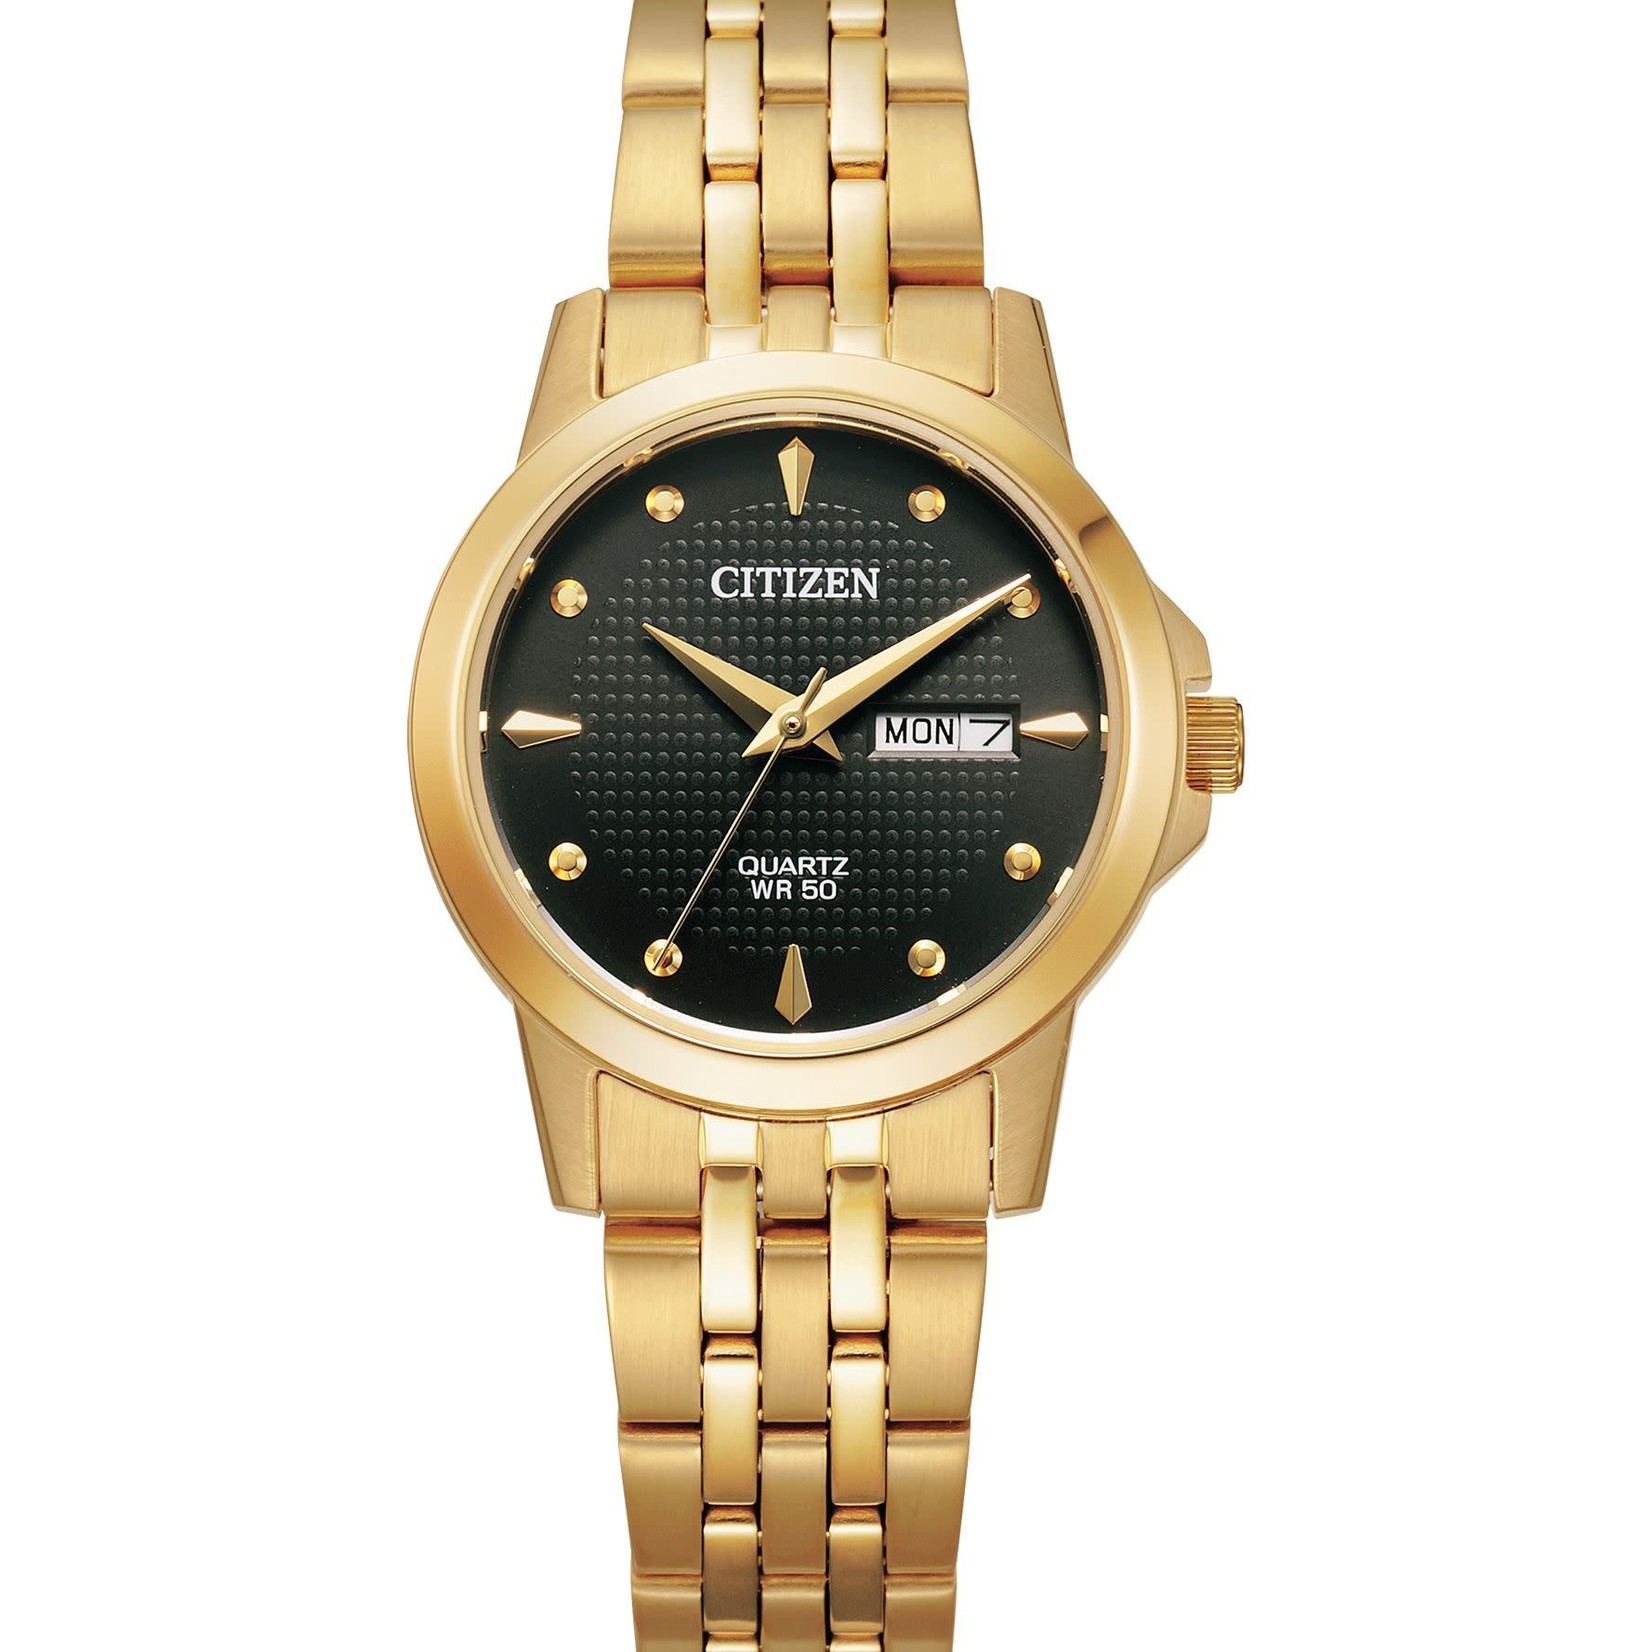 CITIZEN WATCH COMPANY Ladies Citizen Quartz Gold Tone Day/Date Bracelet Watch w/Black Dial